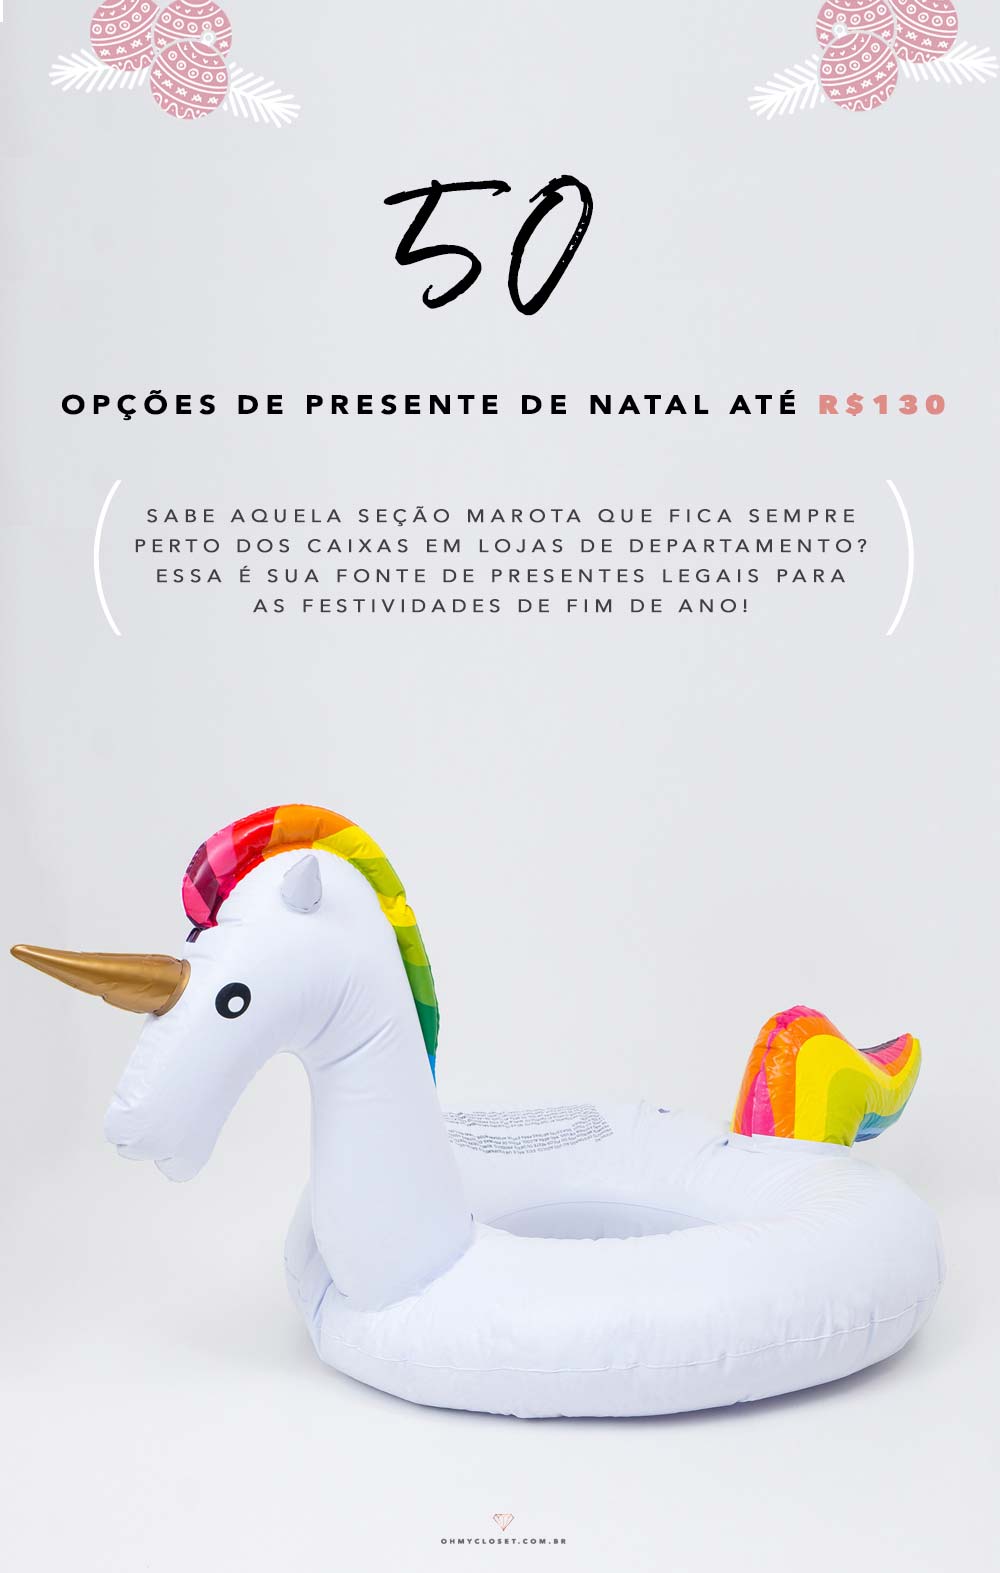 50 Ideias de Presente de Natal por Menos de 130 reais - Oh My Closet!